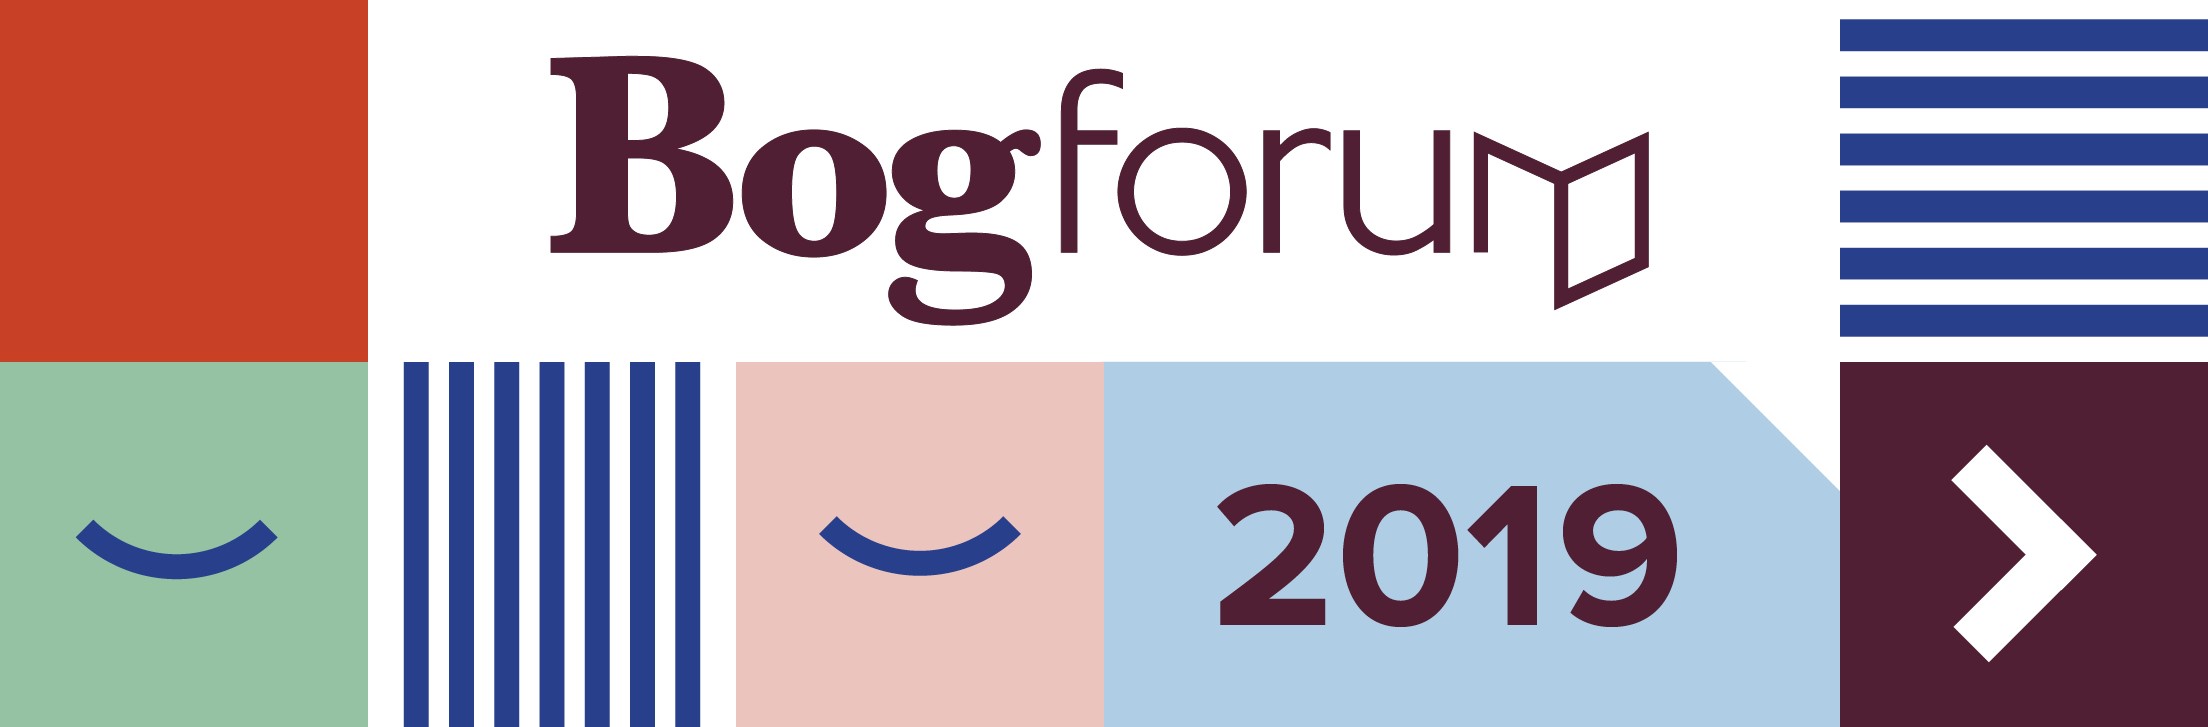 Bogforum 2019: Tag med til Det Danske Sprog- og Litteraturselskabs arrangementer